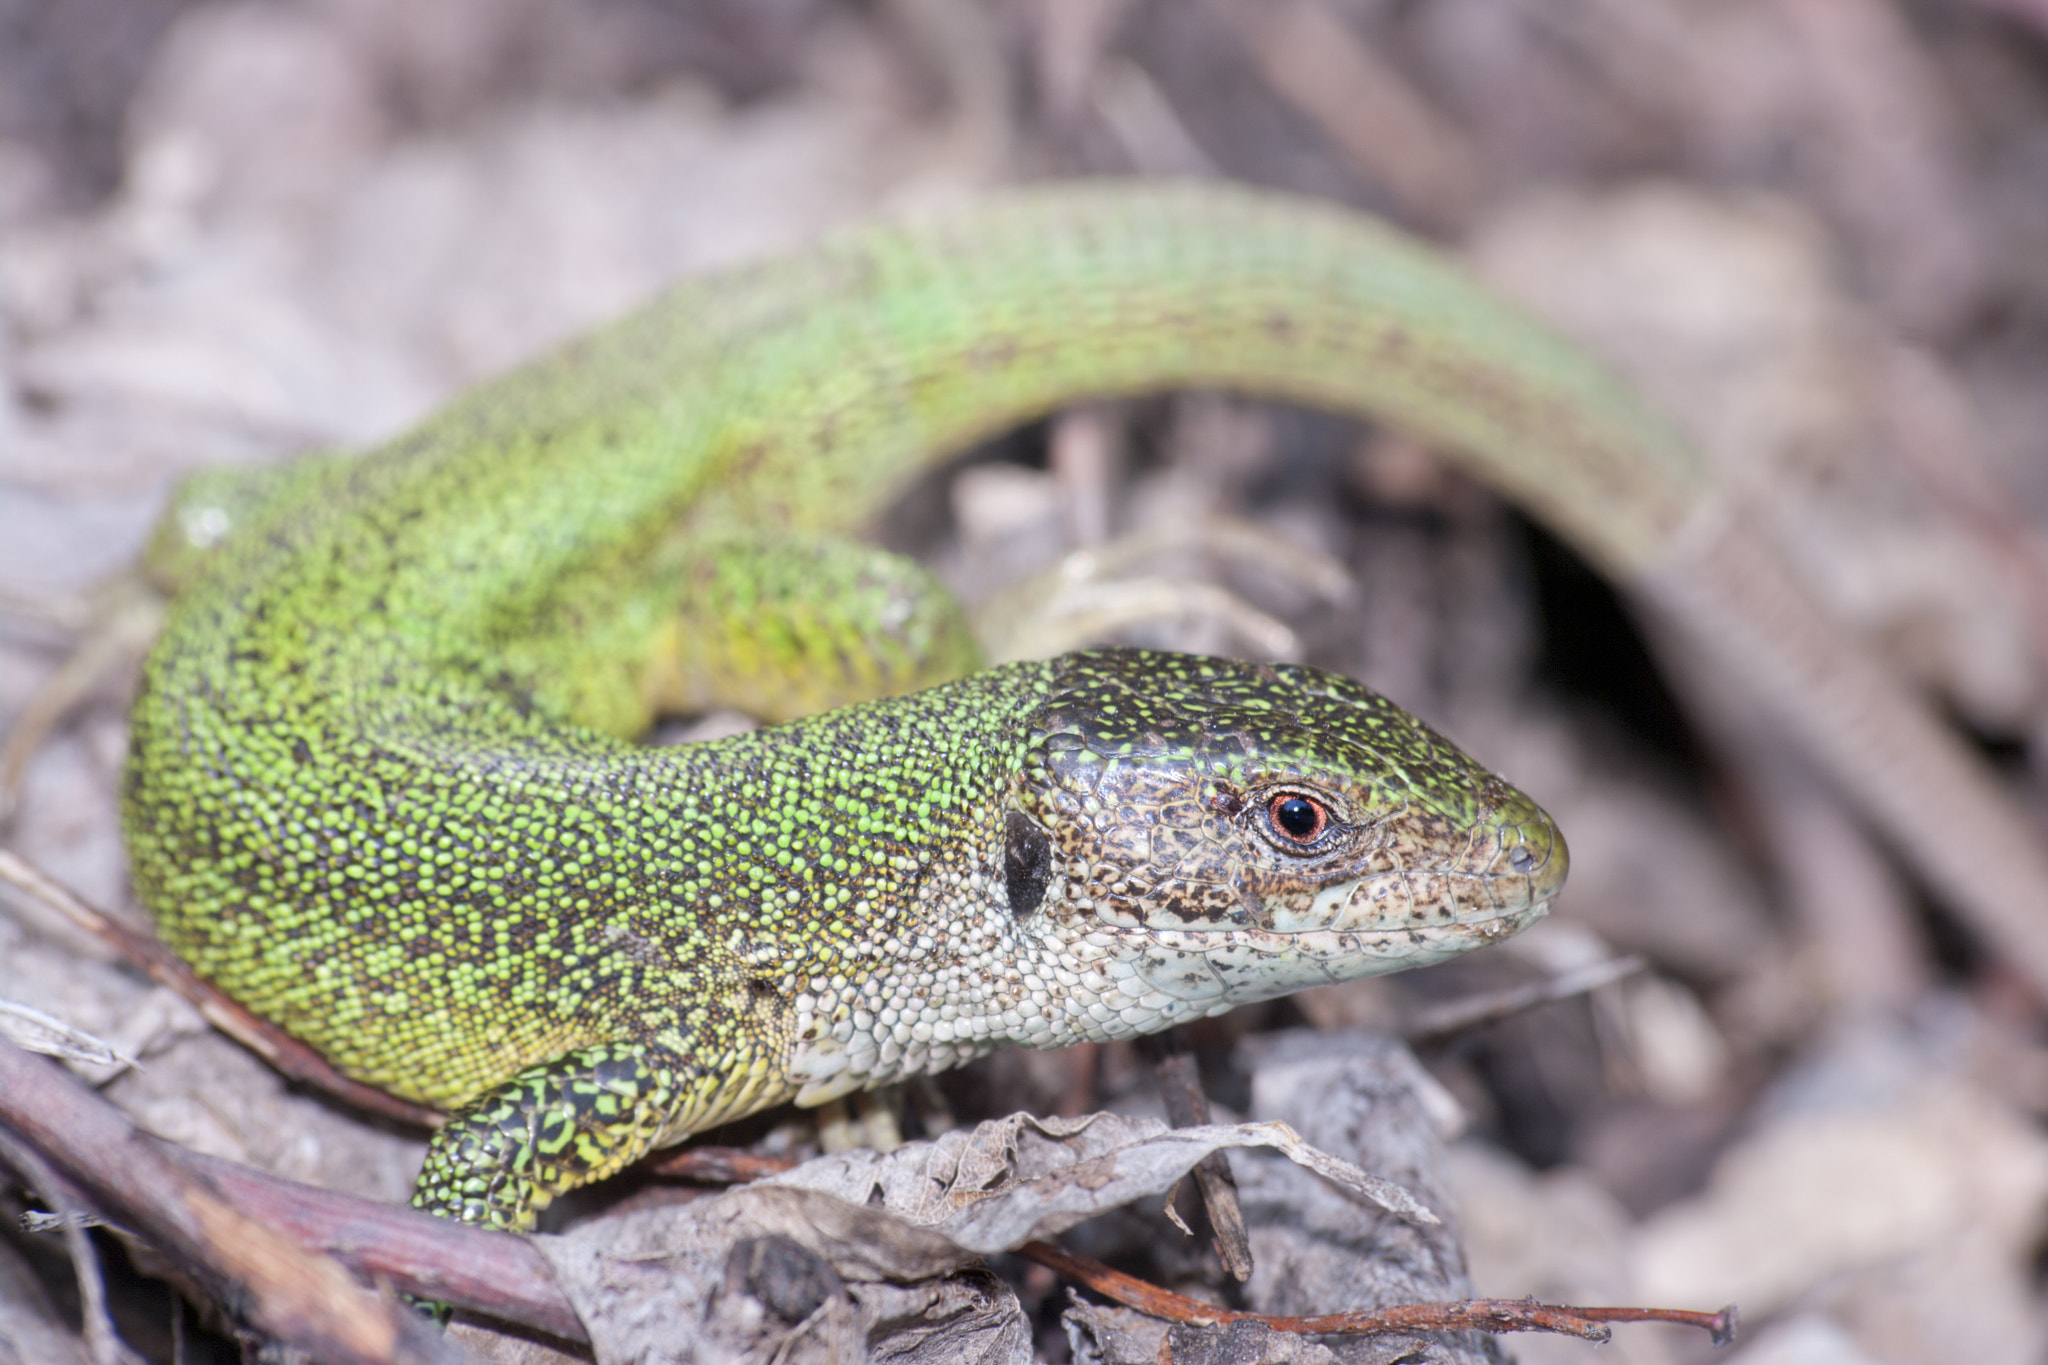 Pentax K20D sample photo. Green lizard photography